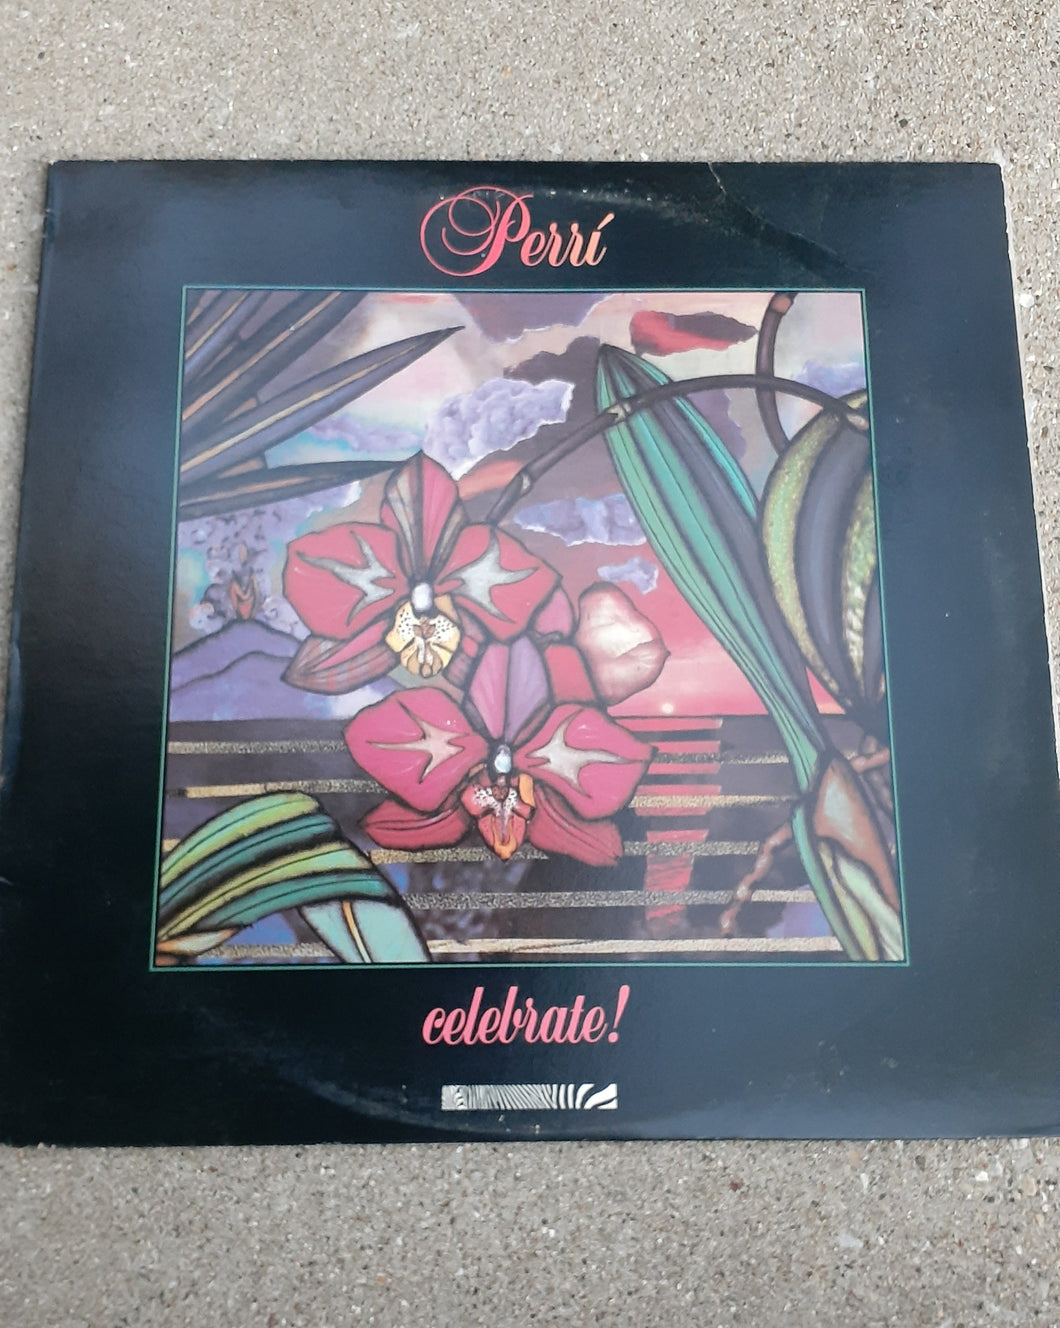 Perri - Celebrate - 1986 Kargo Fresh